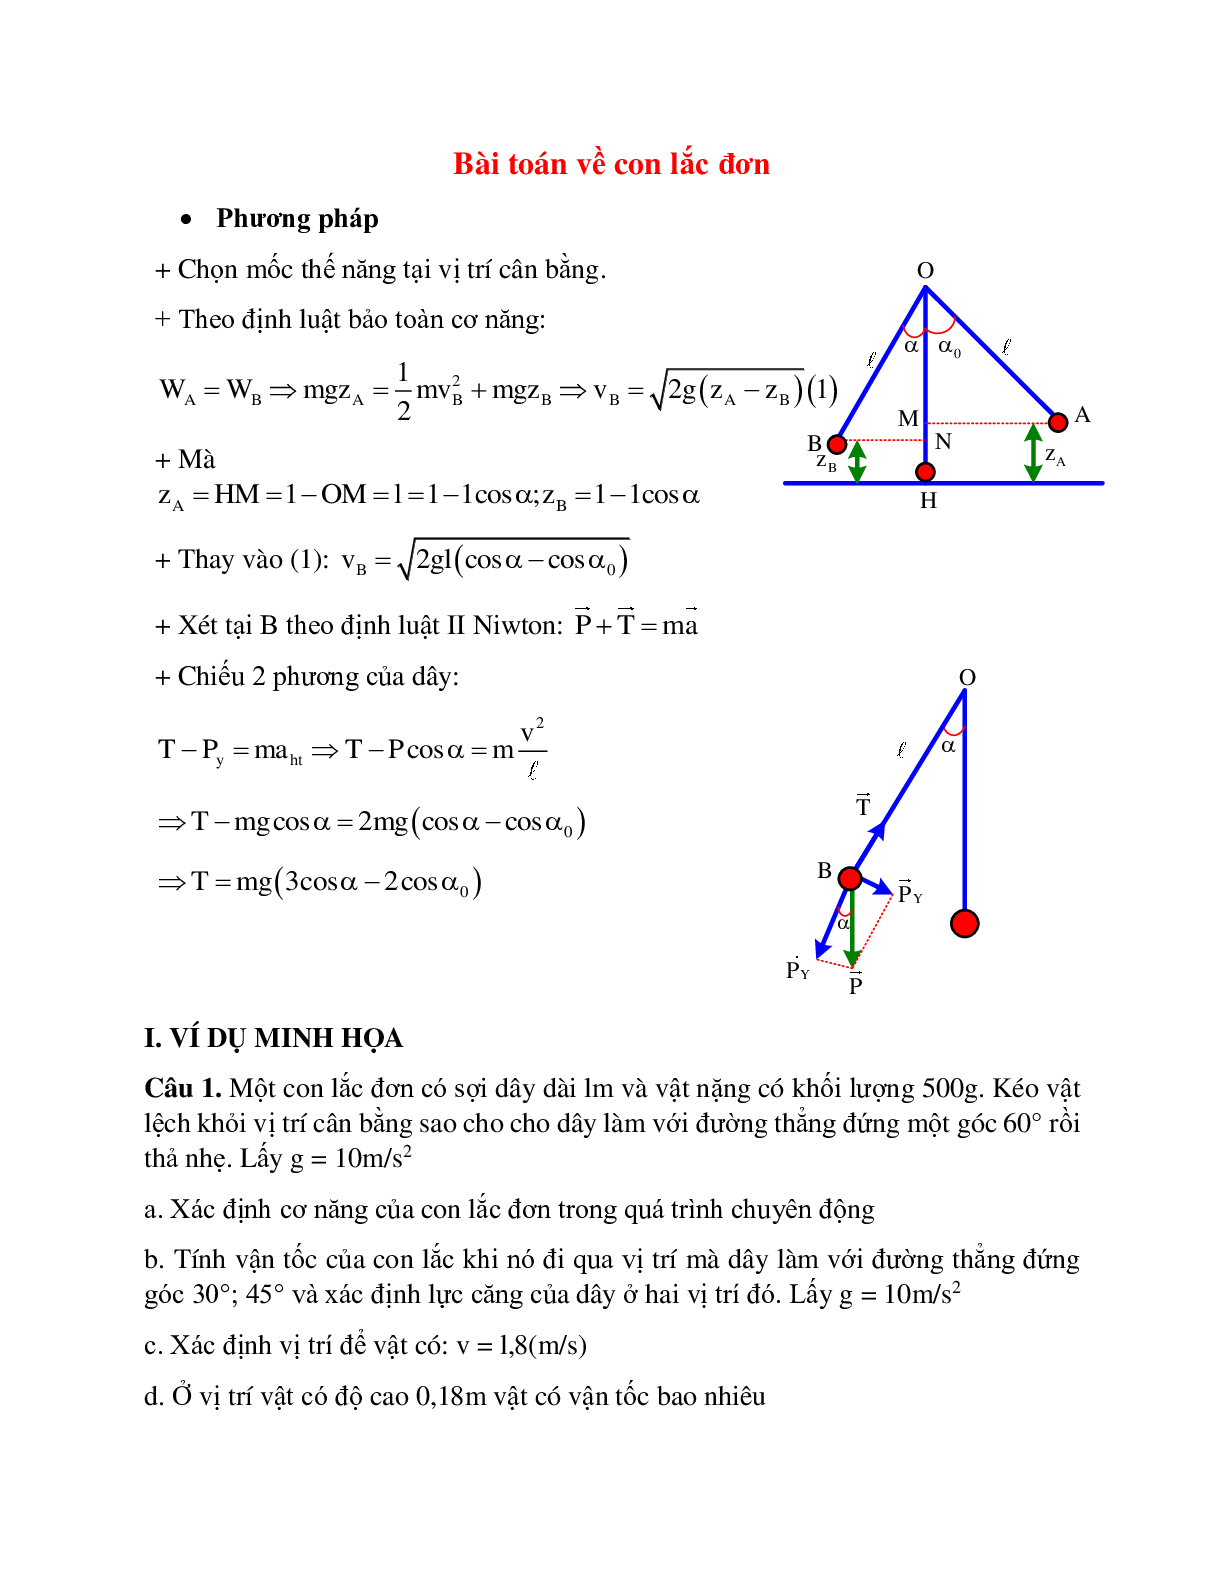 Phương pháp giải và bài tập về Bài toán về con lắc đơn có lời giải (trang 1)